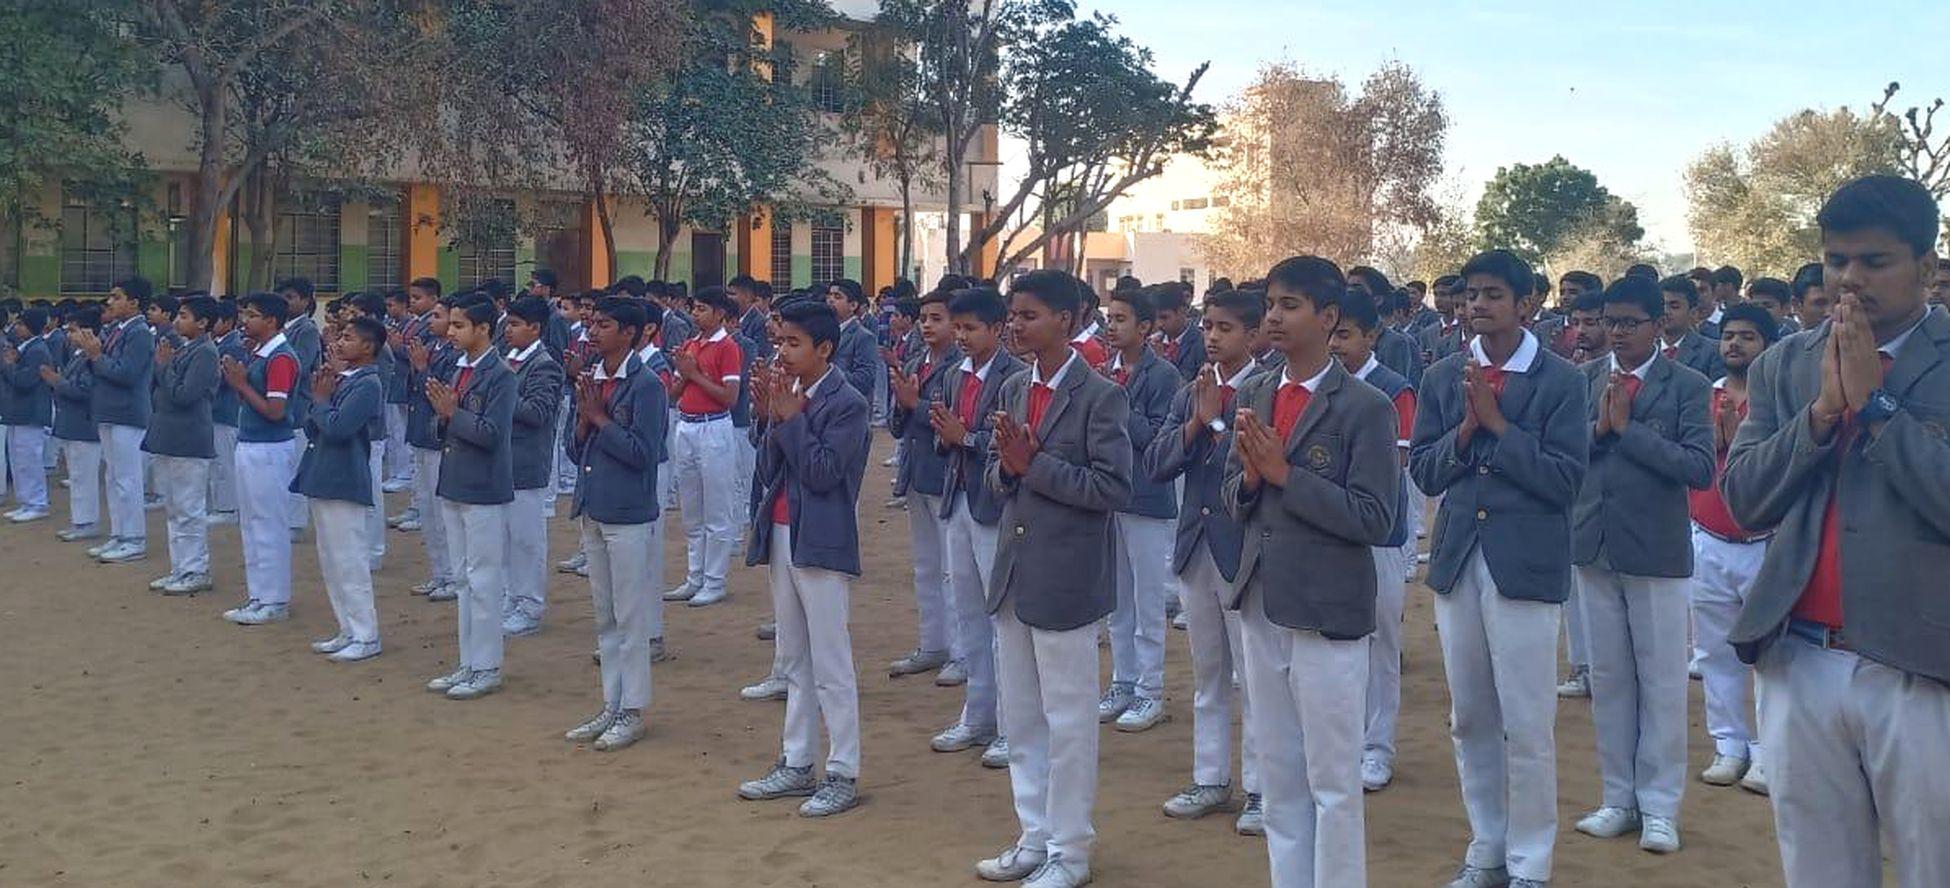 कुचामन के टैगोर इंटरनेशनल स्कूल में स्वर्णिम भारत अभियान की शपथ लेते विद्यार्थी।